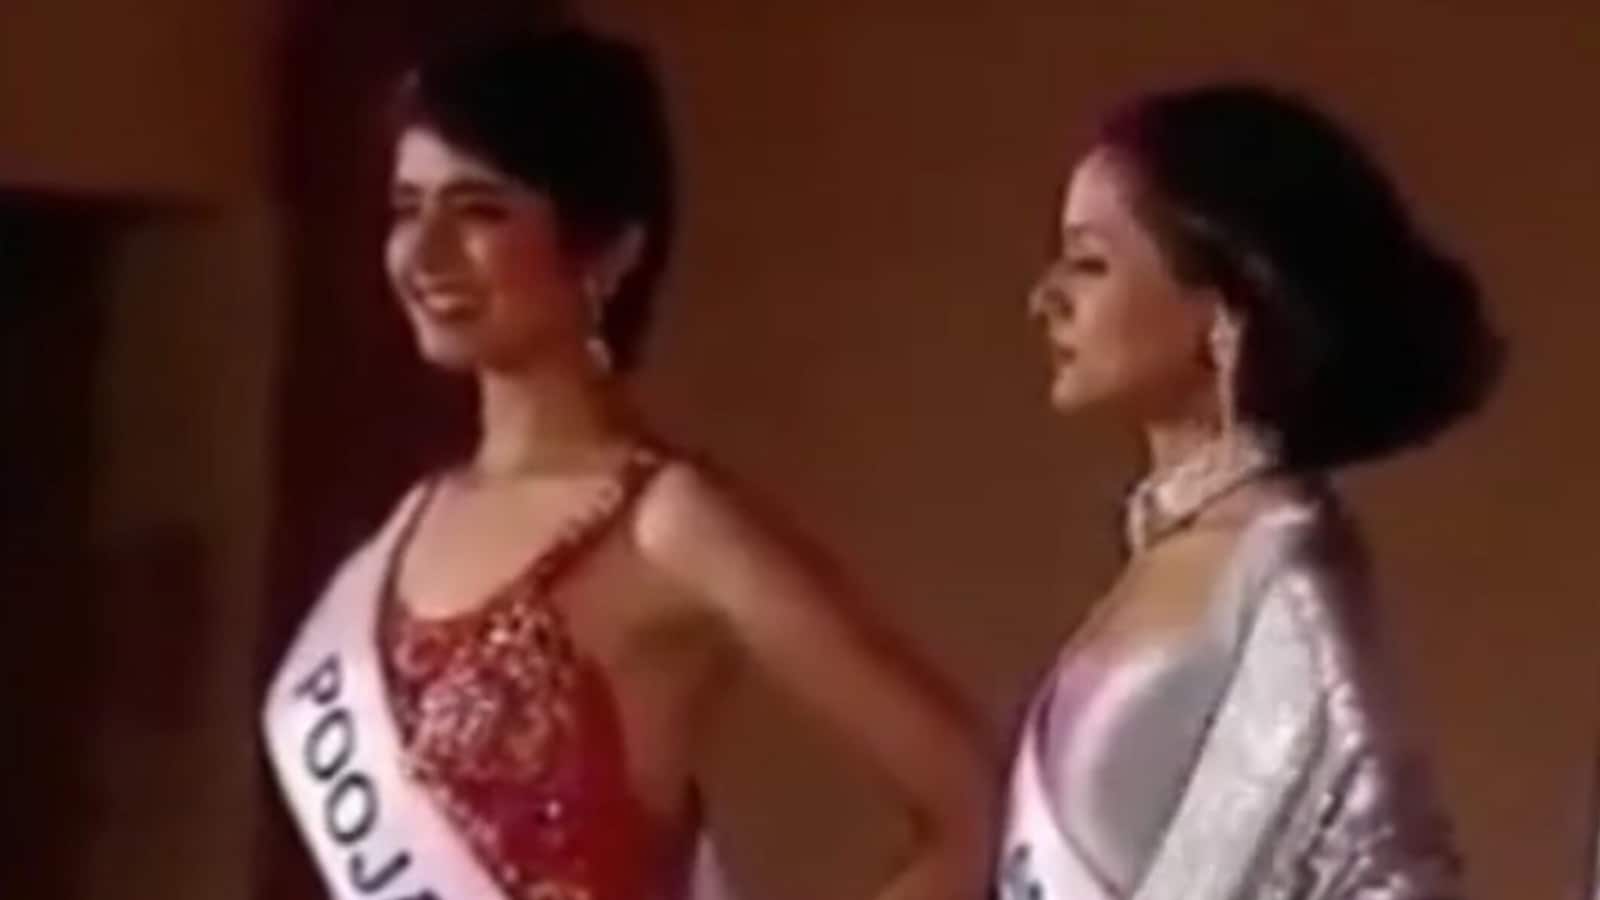 Cuando Namrata Shirodkar, Pooja Batra compitieron entre sí por la corona de Miss India de 1993, respondieron la pregunta del huevo de gallina.